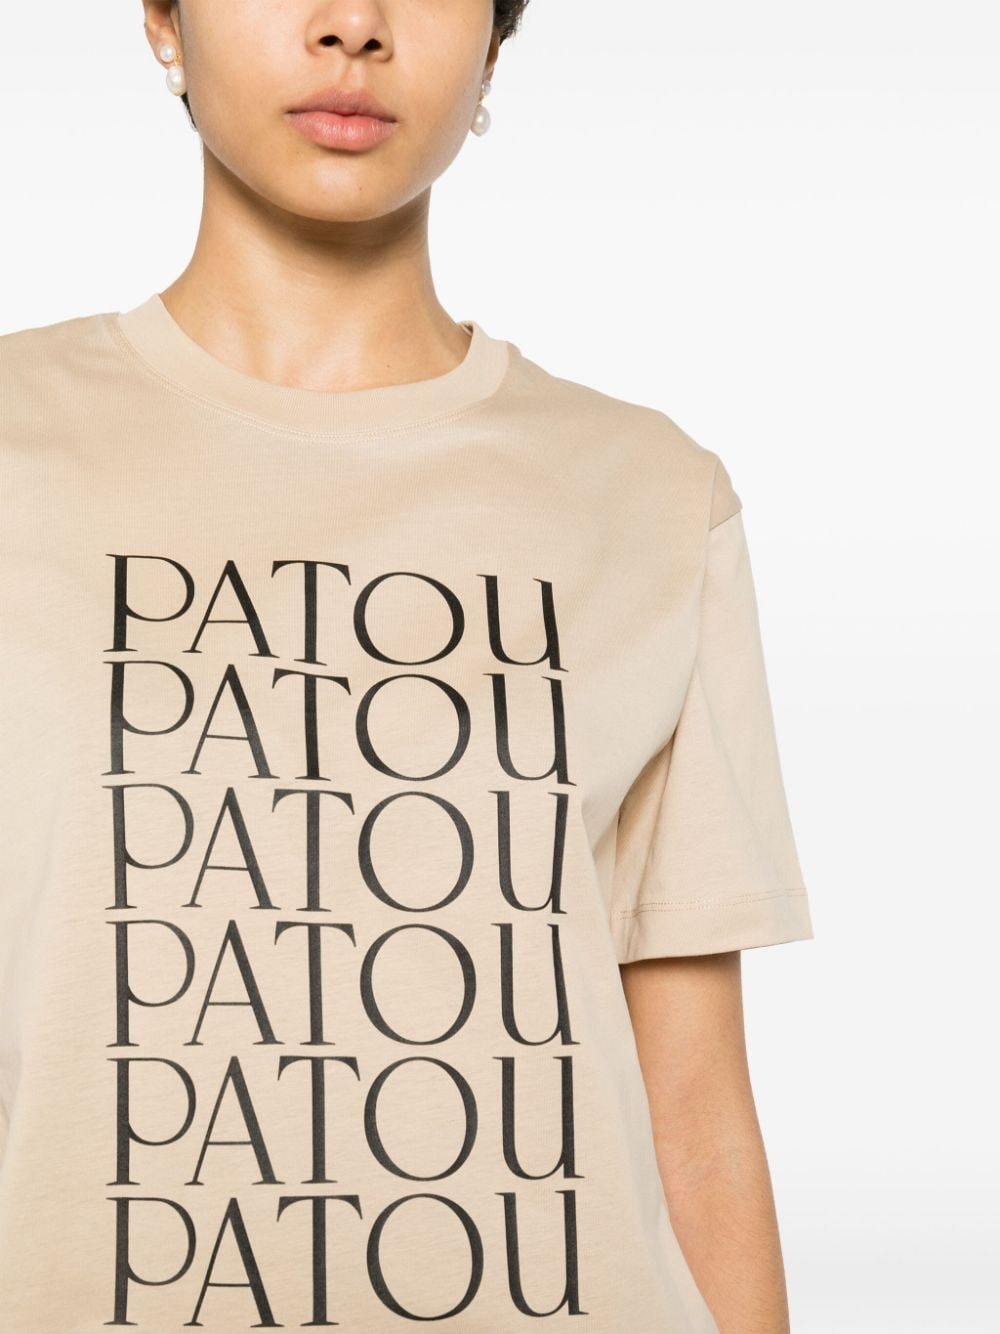 Patou Patou cotton T-shirt - 5